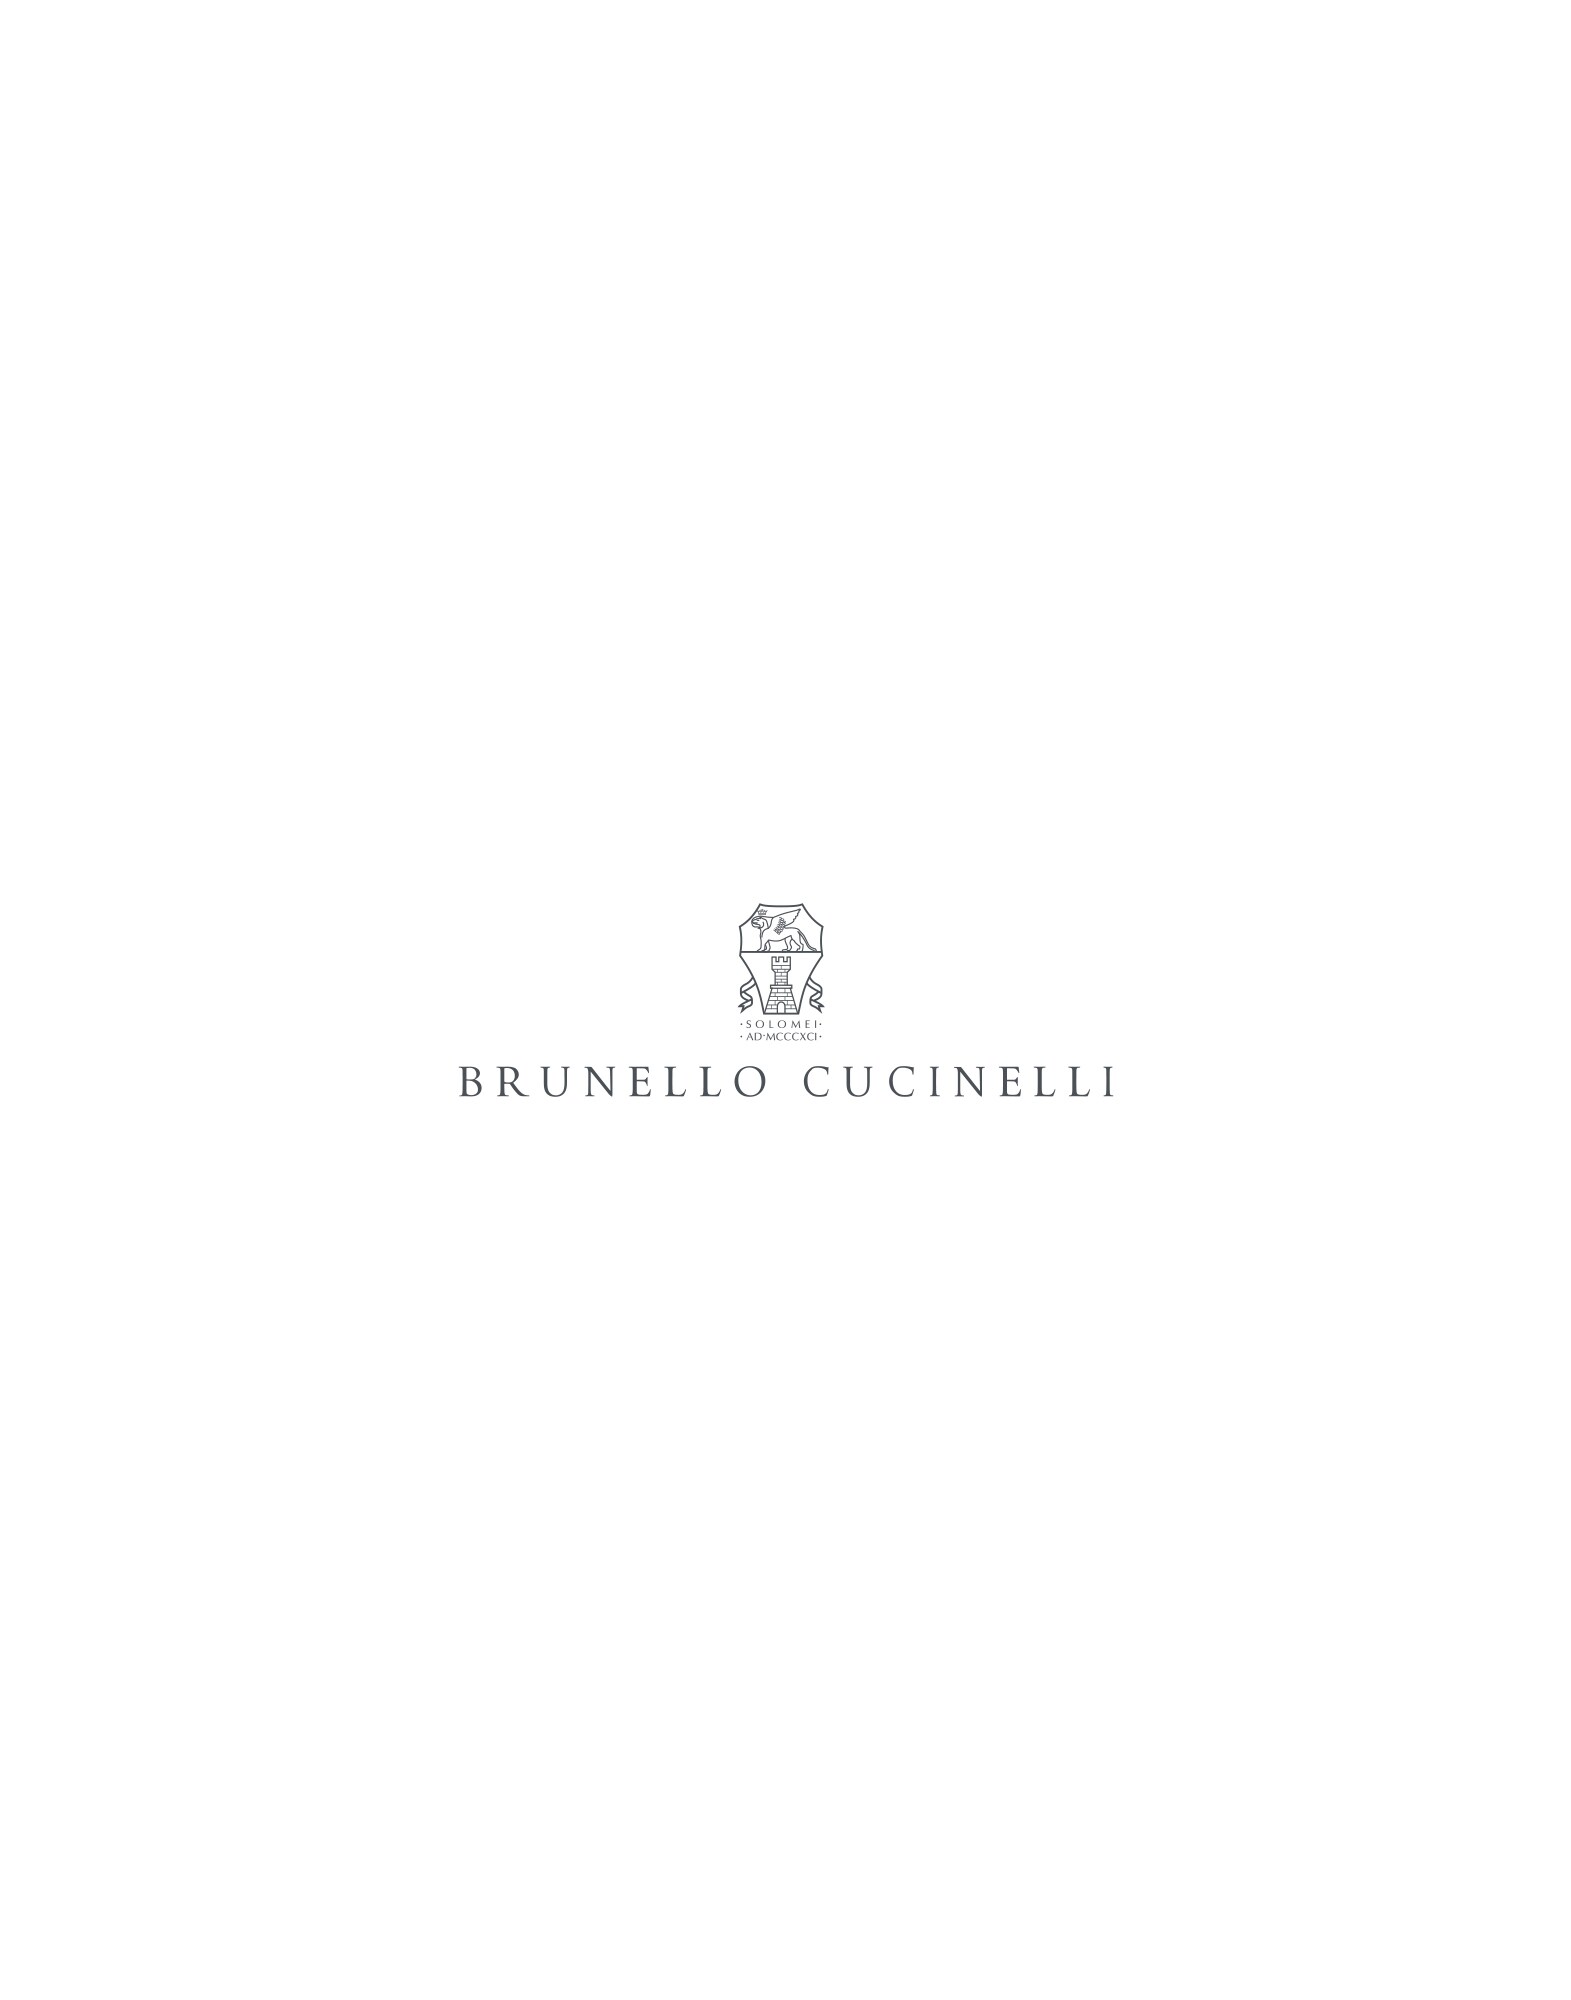 Mr. Brunello - Editorial view